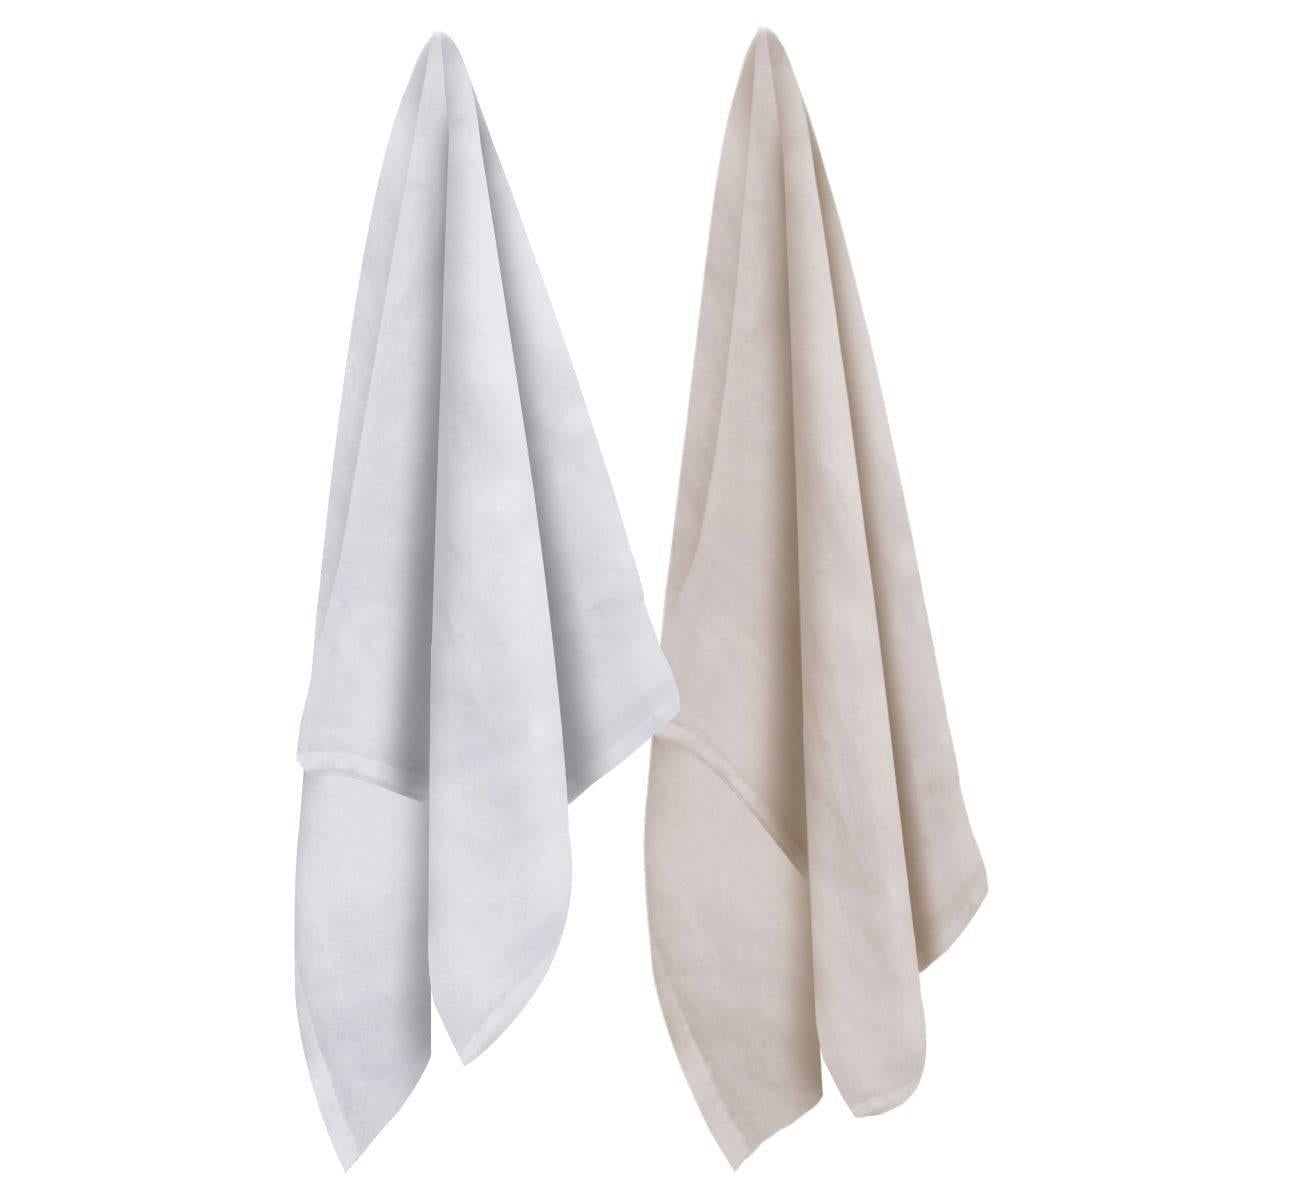 Order Natural Cotton Flour Sack Towels